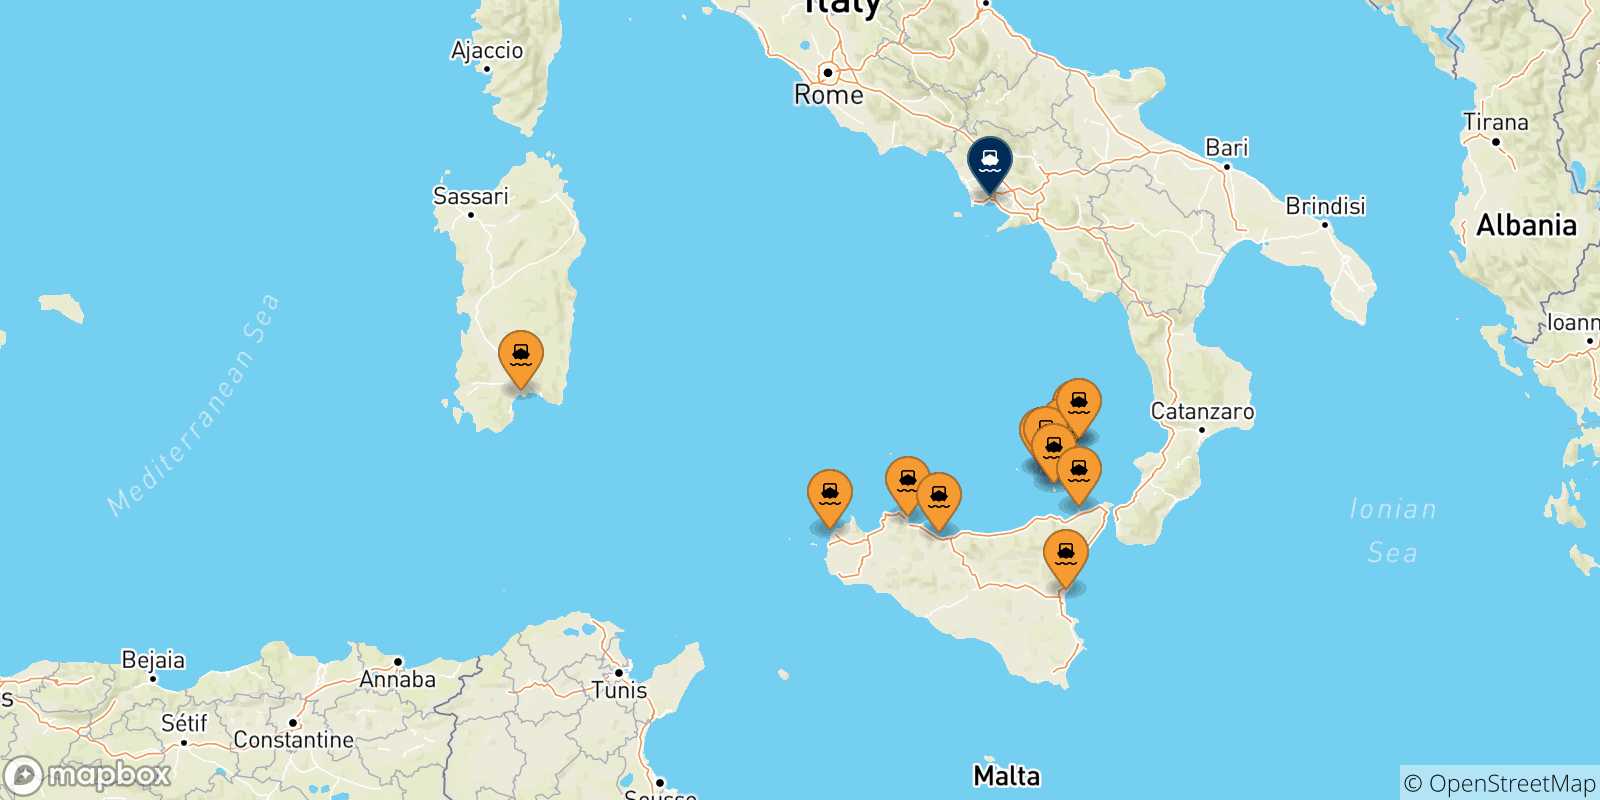 Mappa delle possibili rotte tra l'Italia e Napoli